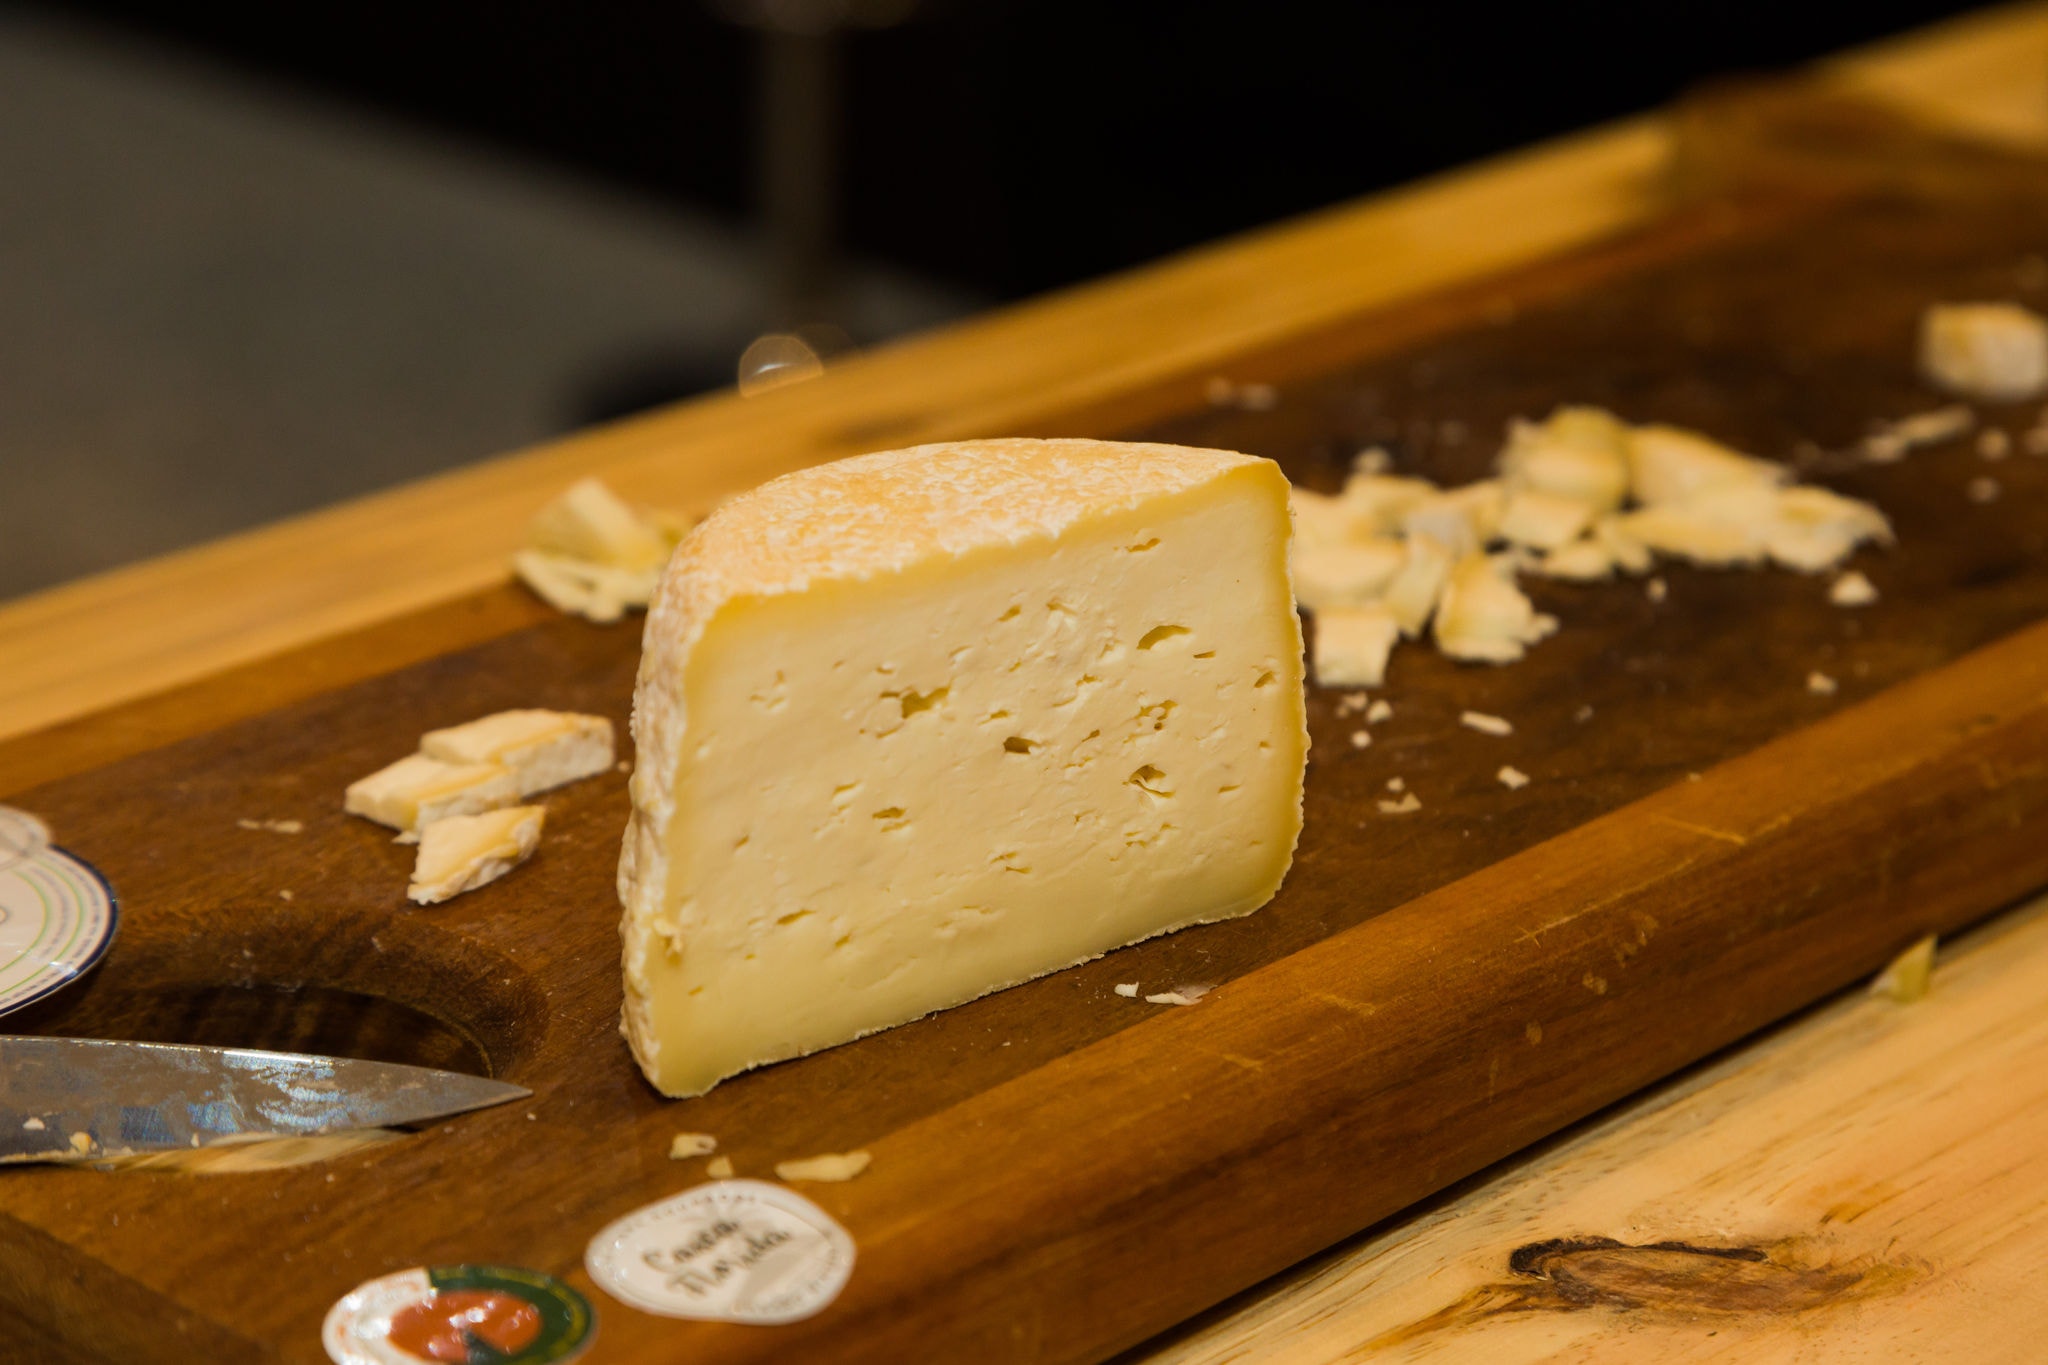 Os queijos artesanais de Minas Gerais representam uma tradição gastronômica que vai além das fronteiras do estado, sendo reconhecidos nacional e internacionalmente